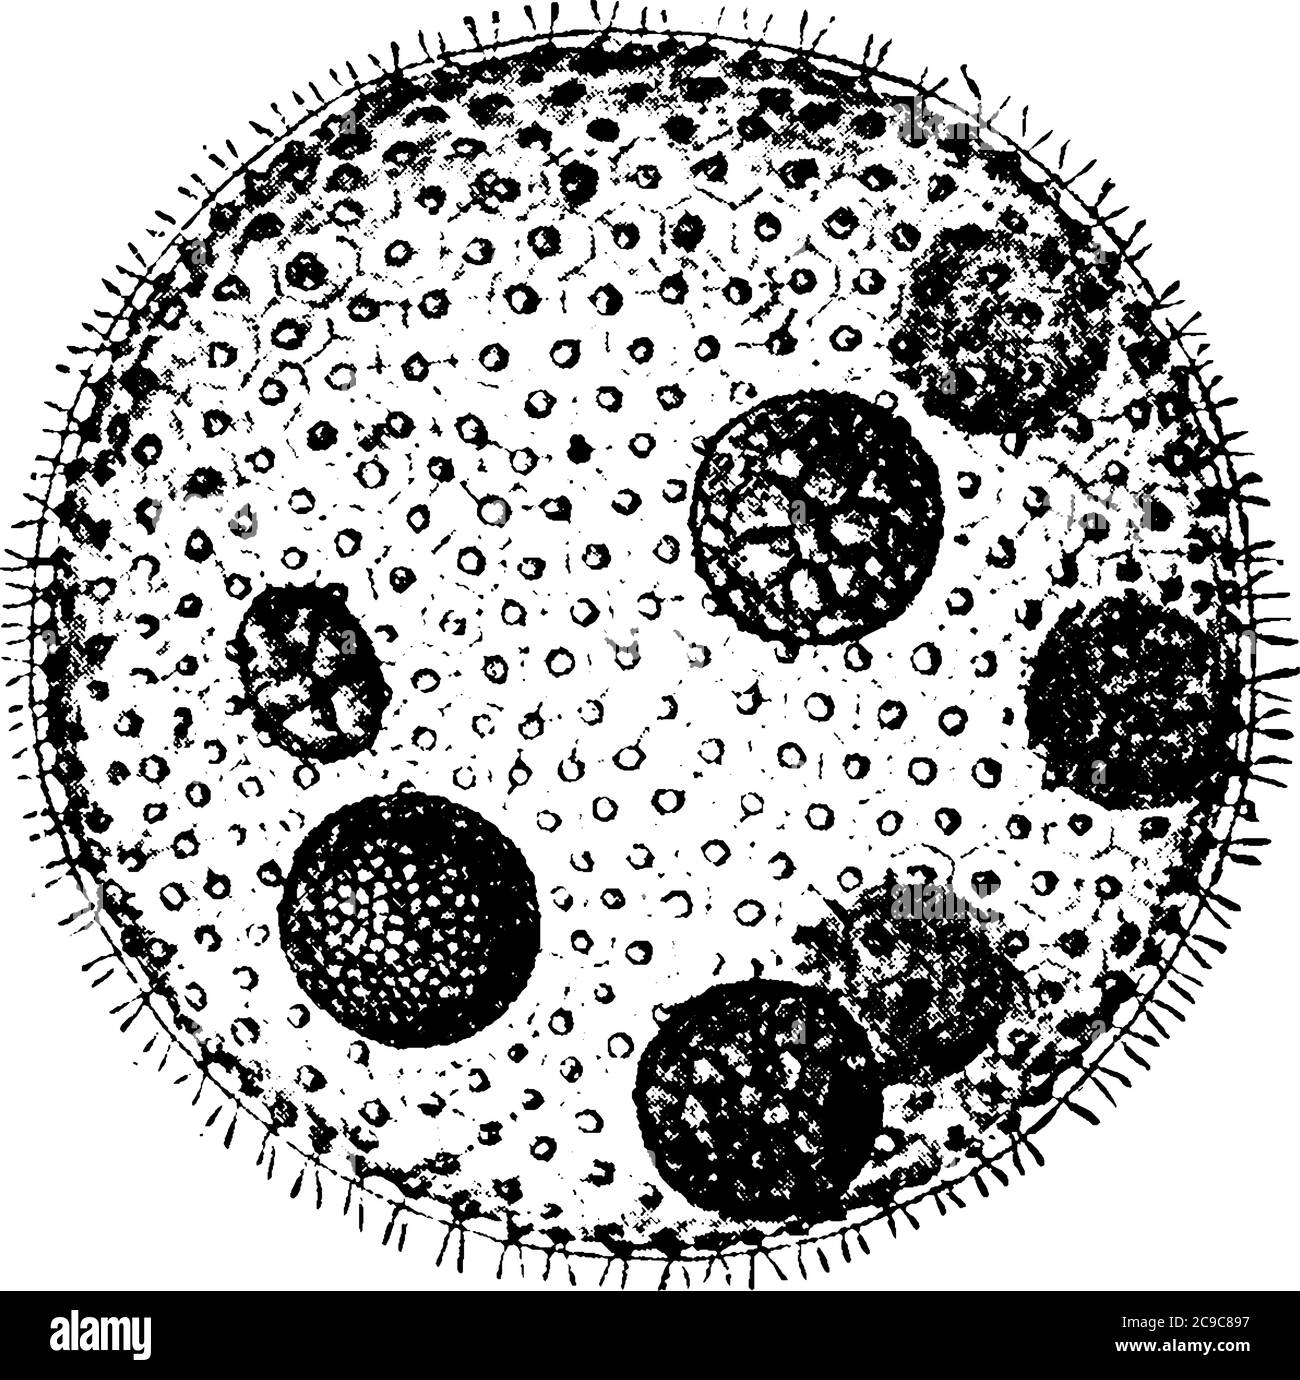 Les grandes colonies sphériques de Volvox globator, composées de plusieurs milliers de cellules. Ces protozoaires forment des colonies. Autour d'un centre creux, millésime l Illustration de Vecteur